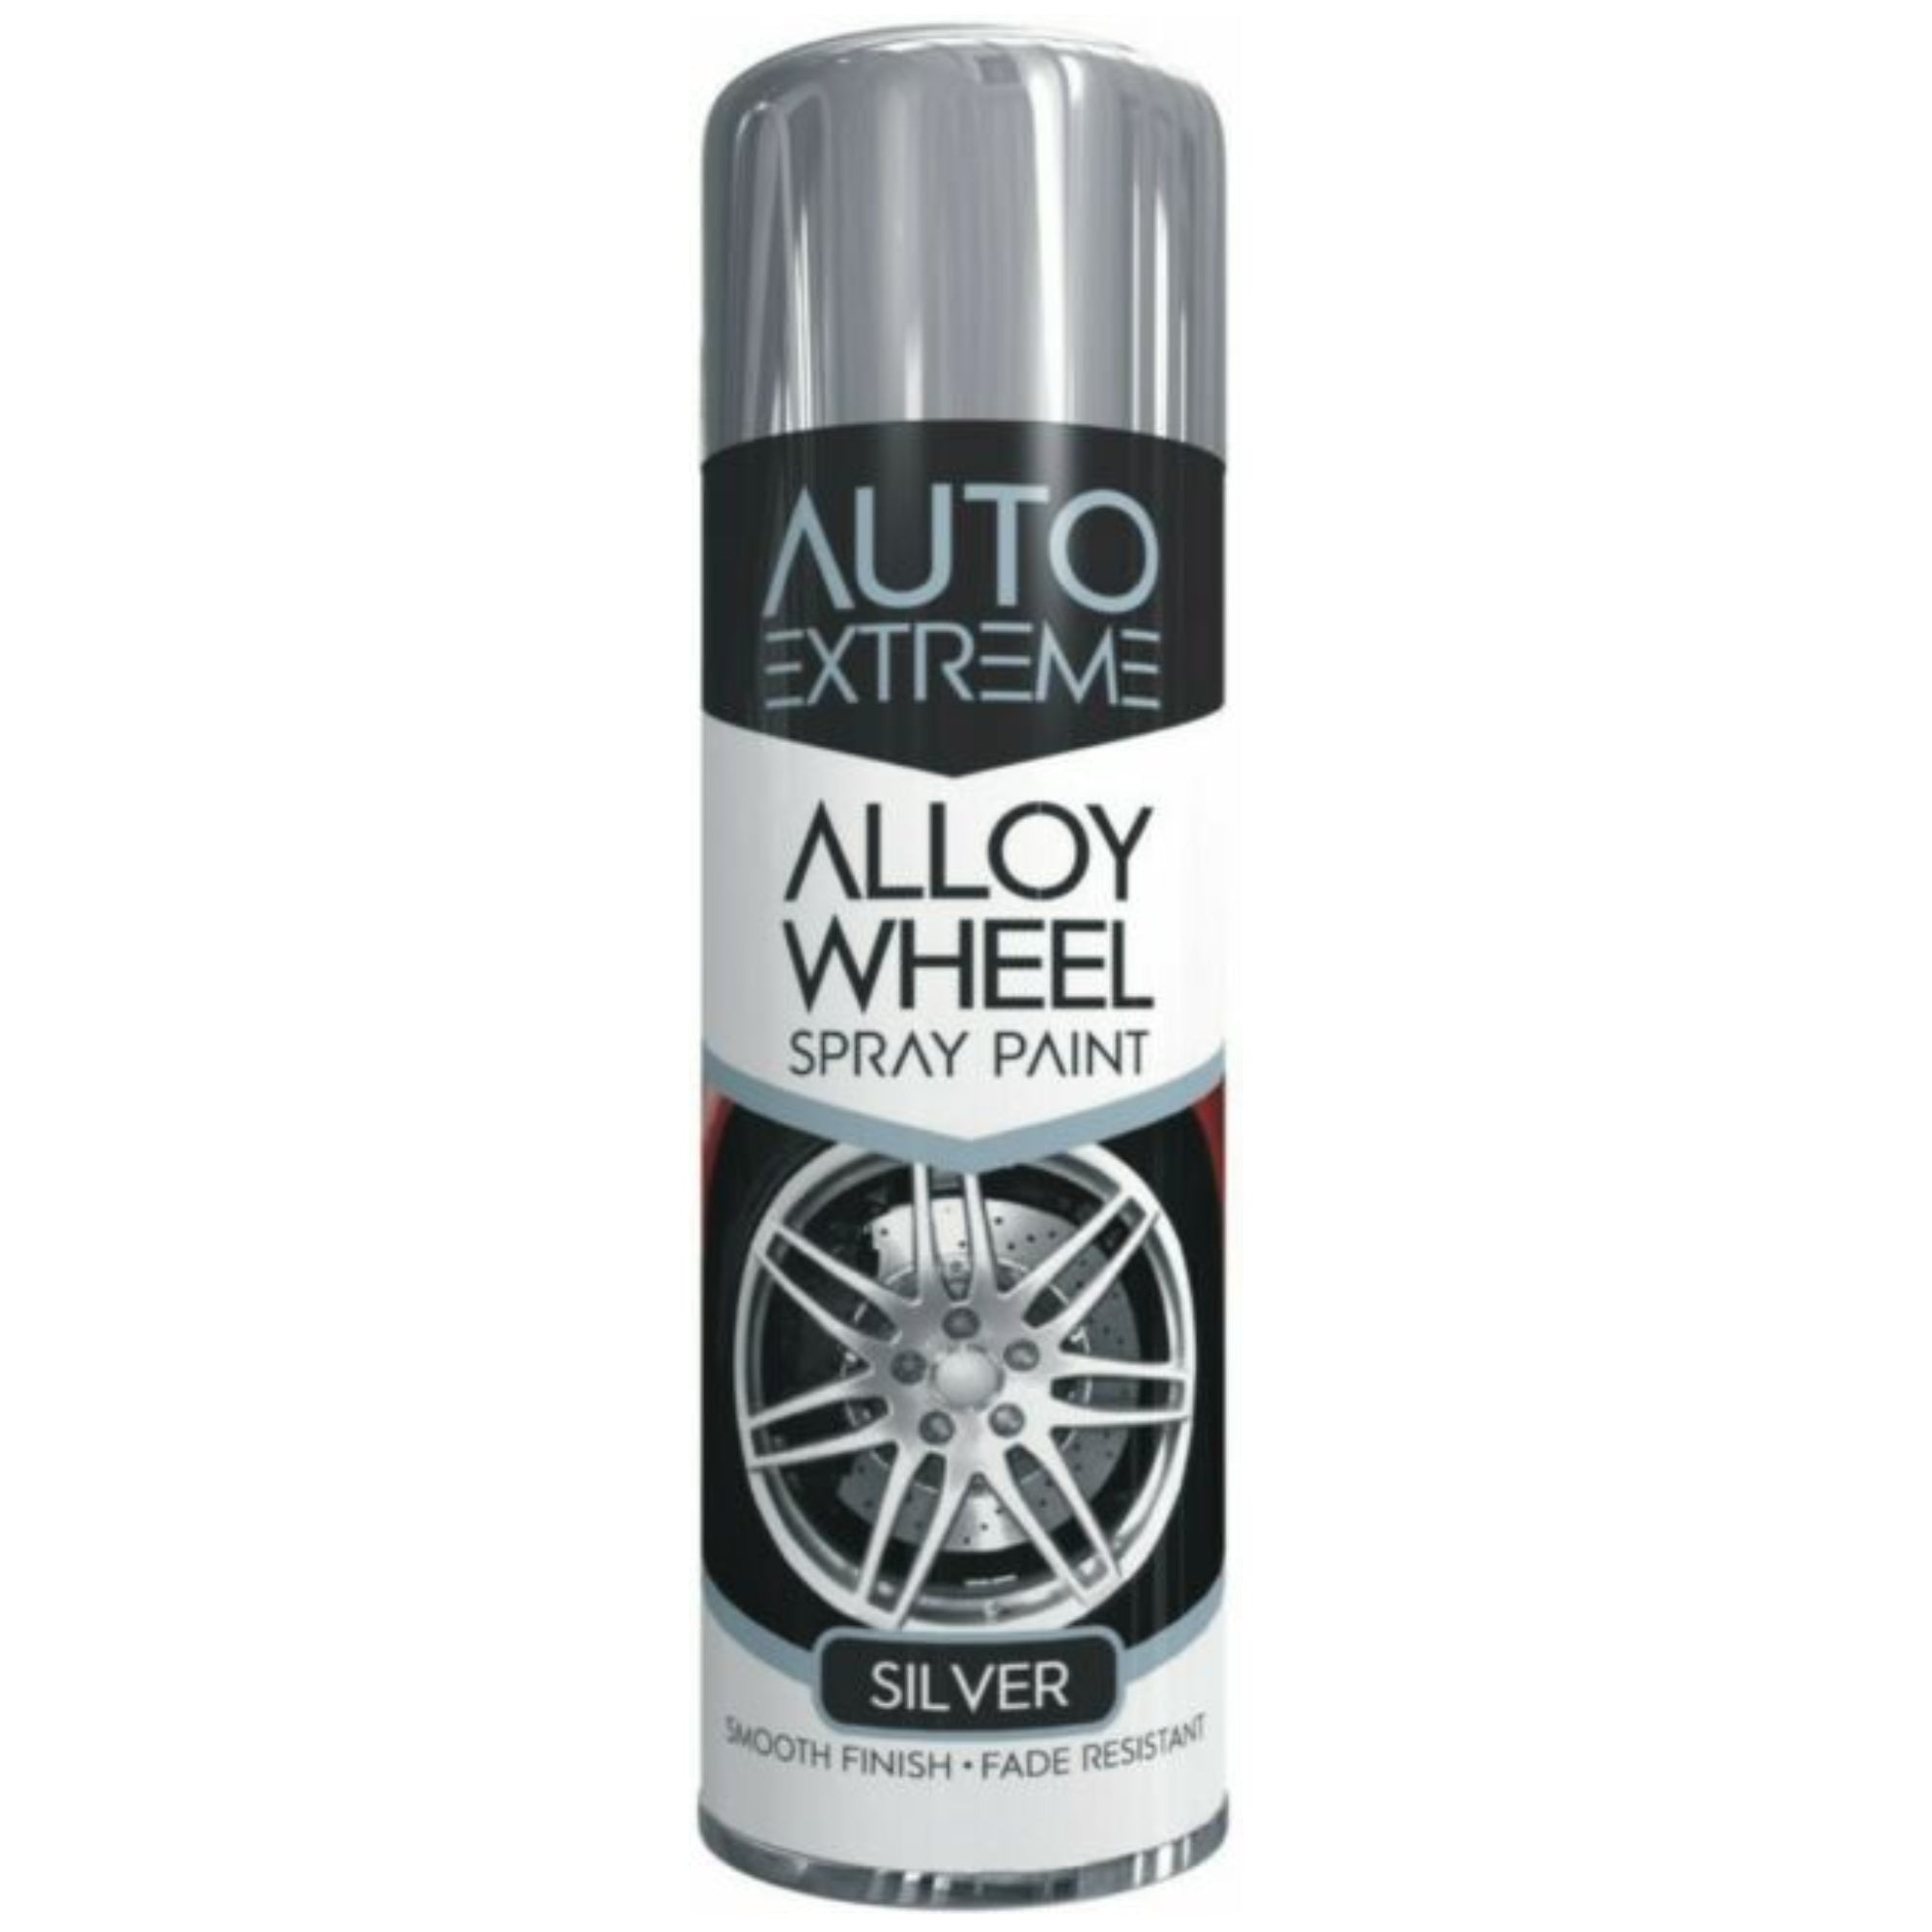 Auto Extreme Silver Alloy Wheel Spray Paint 300ml